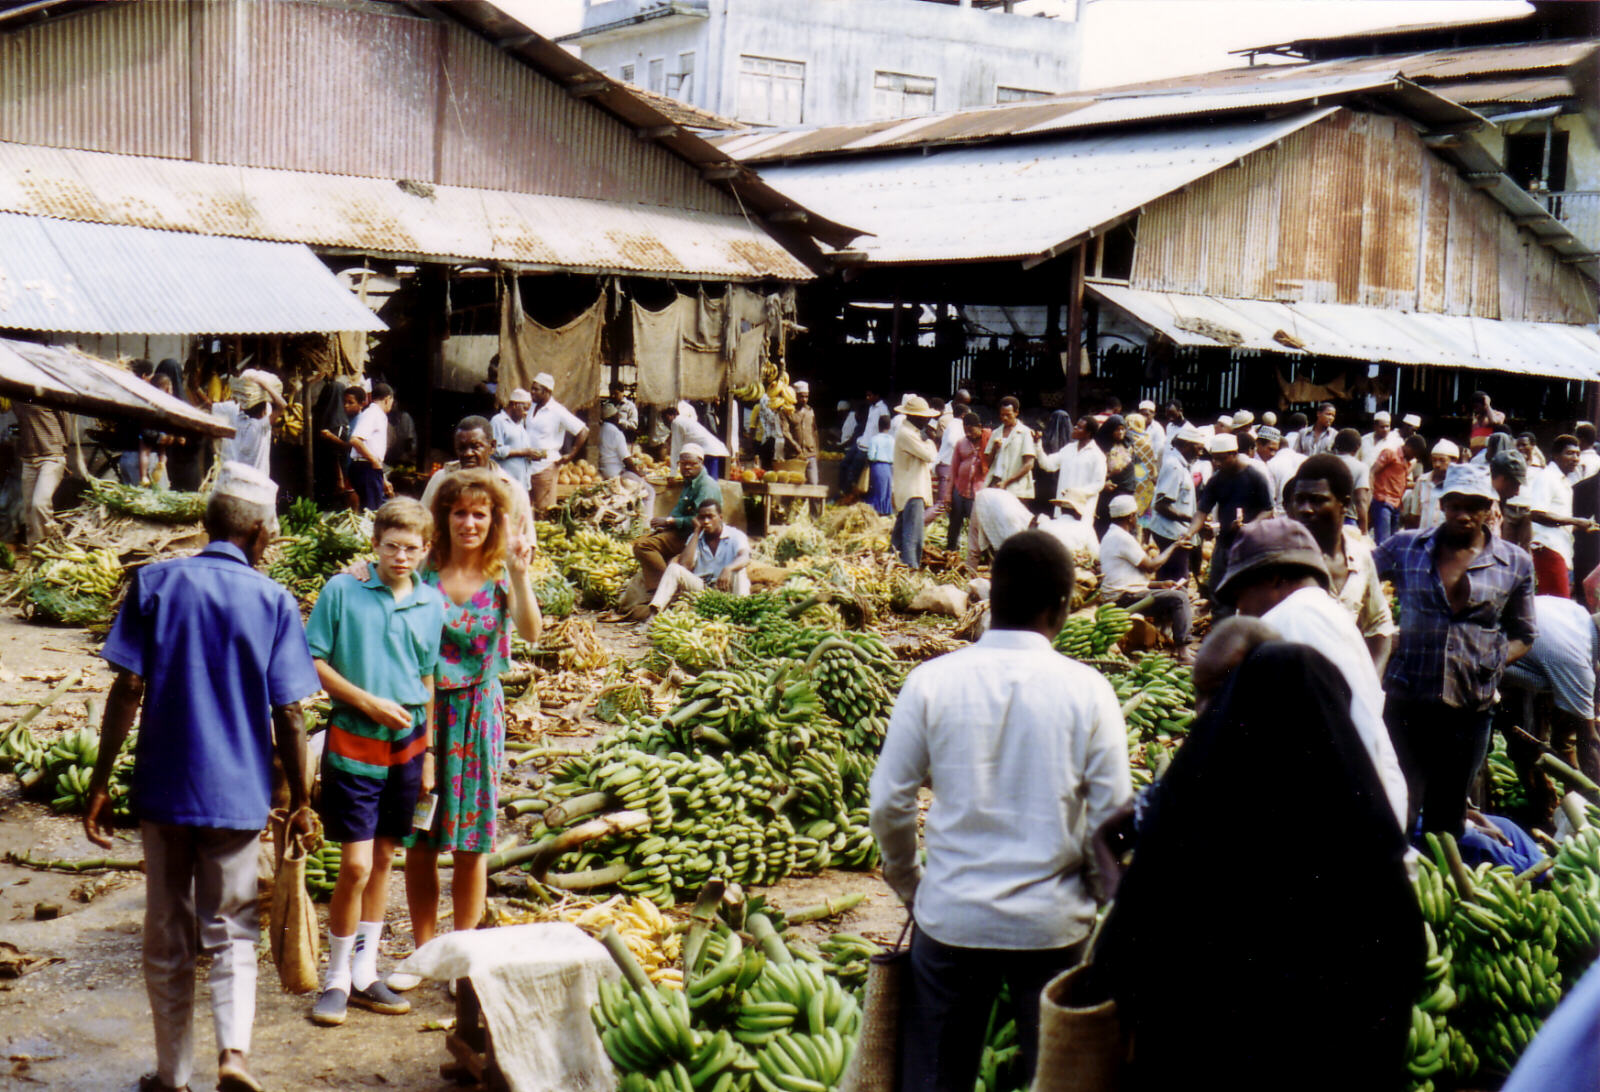 The market in Zanzibar, Tanzania